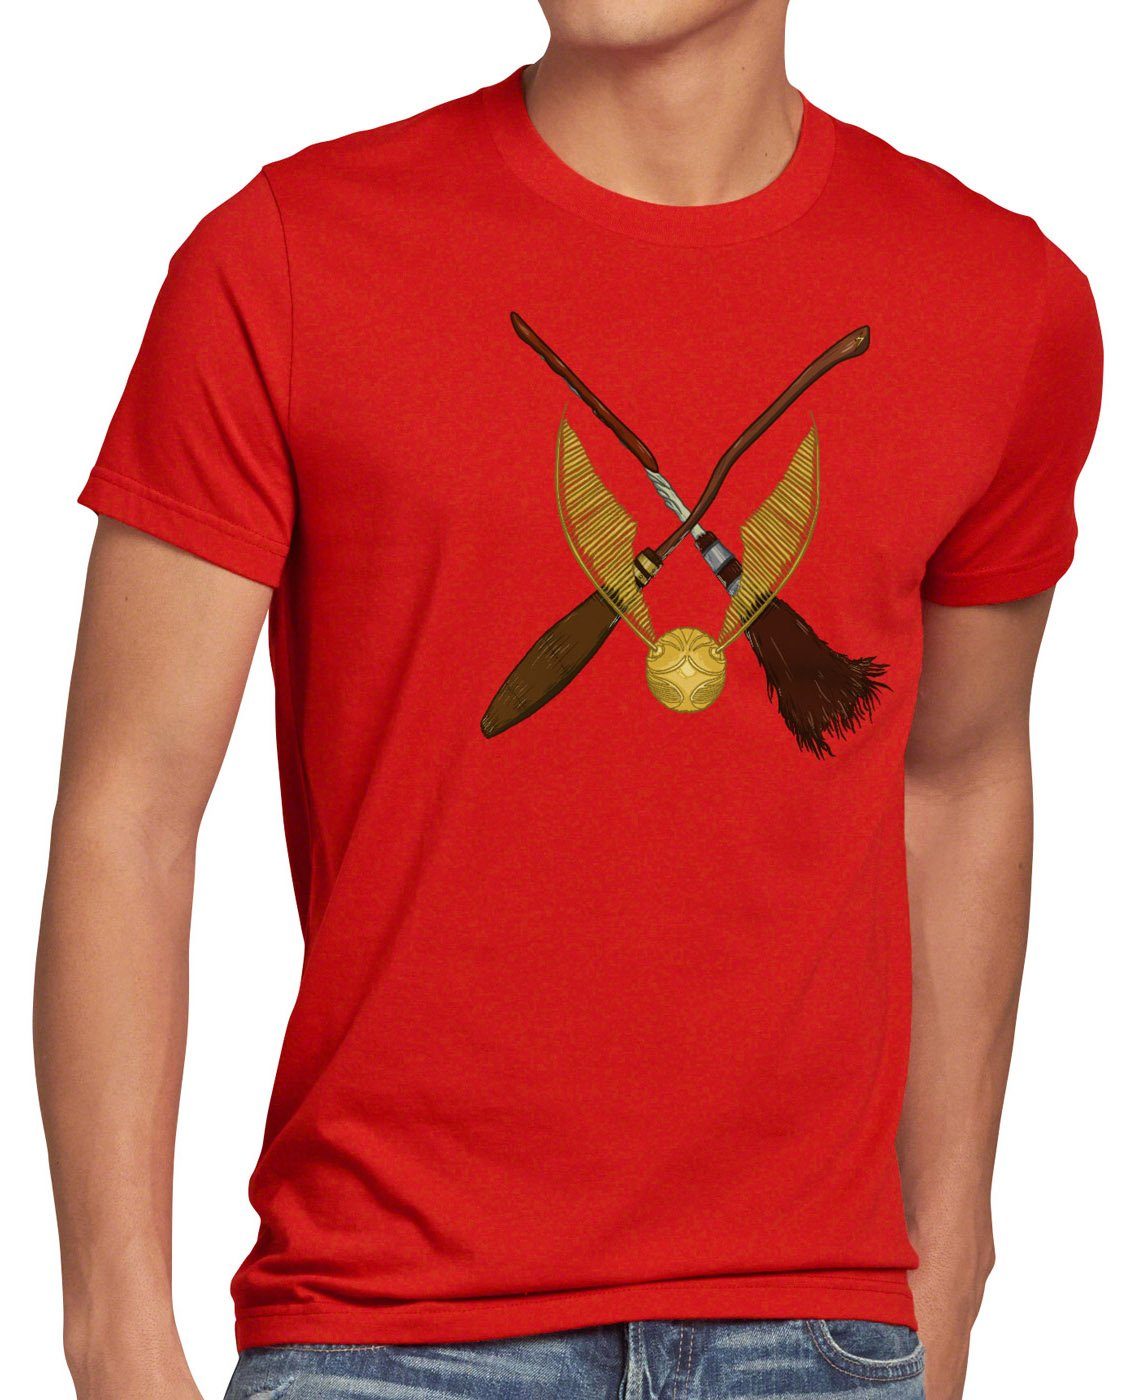 Top-Verkaufskonzept style3 Print-Shirt Herren T-Shirt besen quidditch turnier sport Goldener rot Schnatz